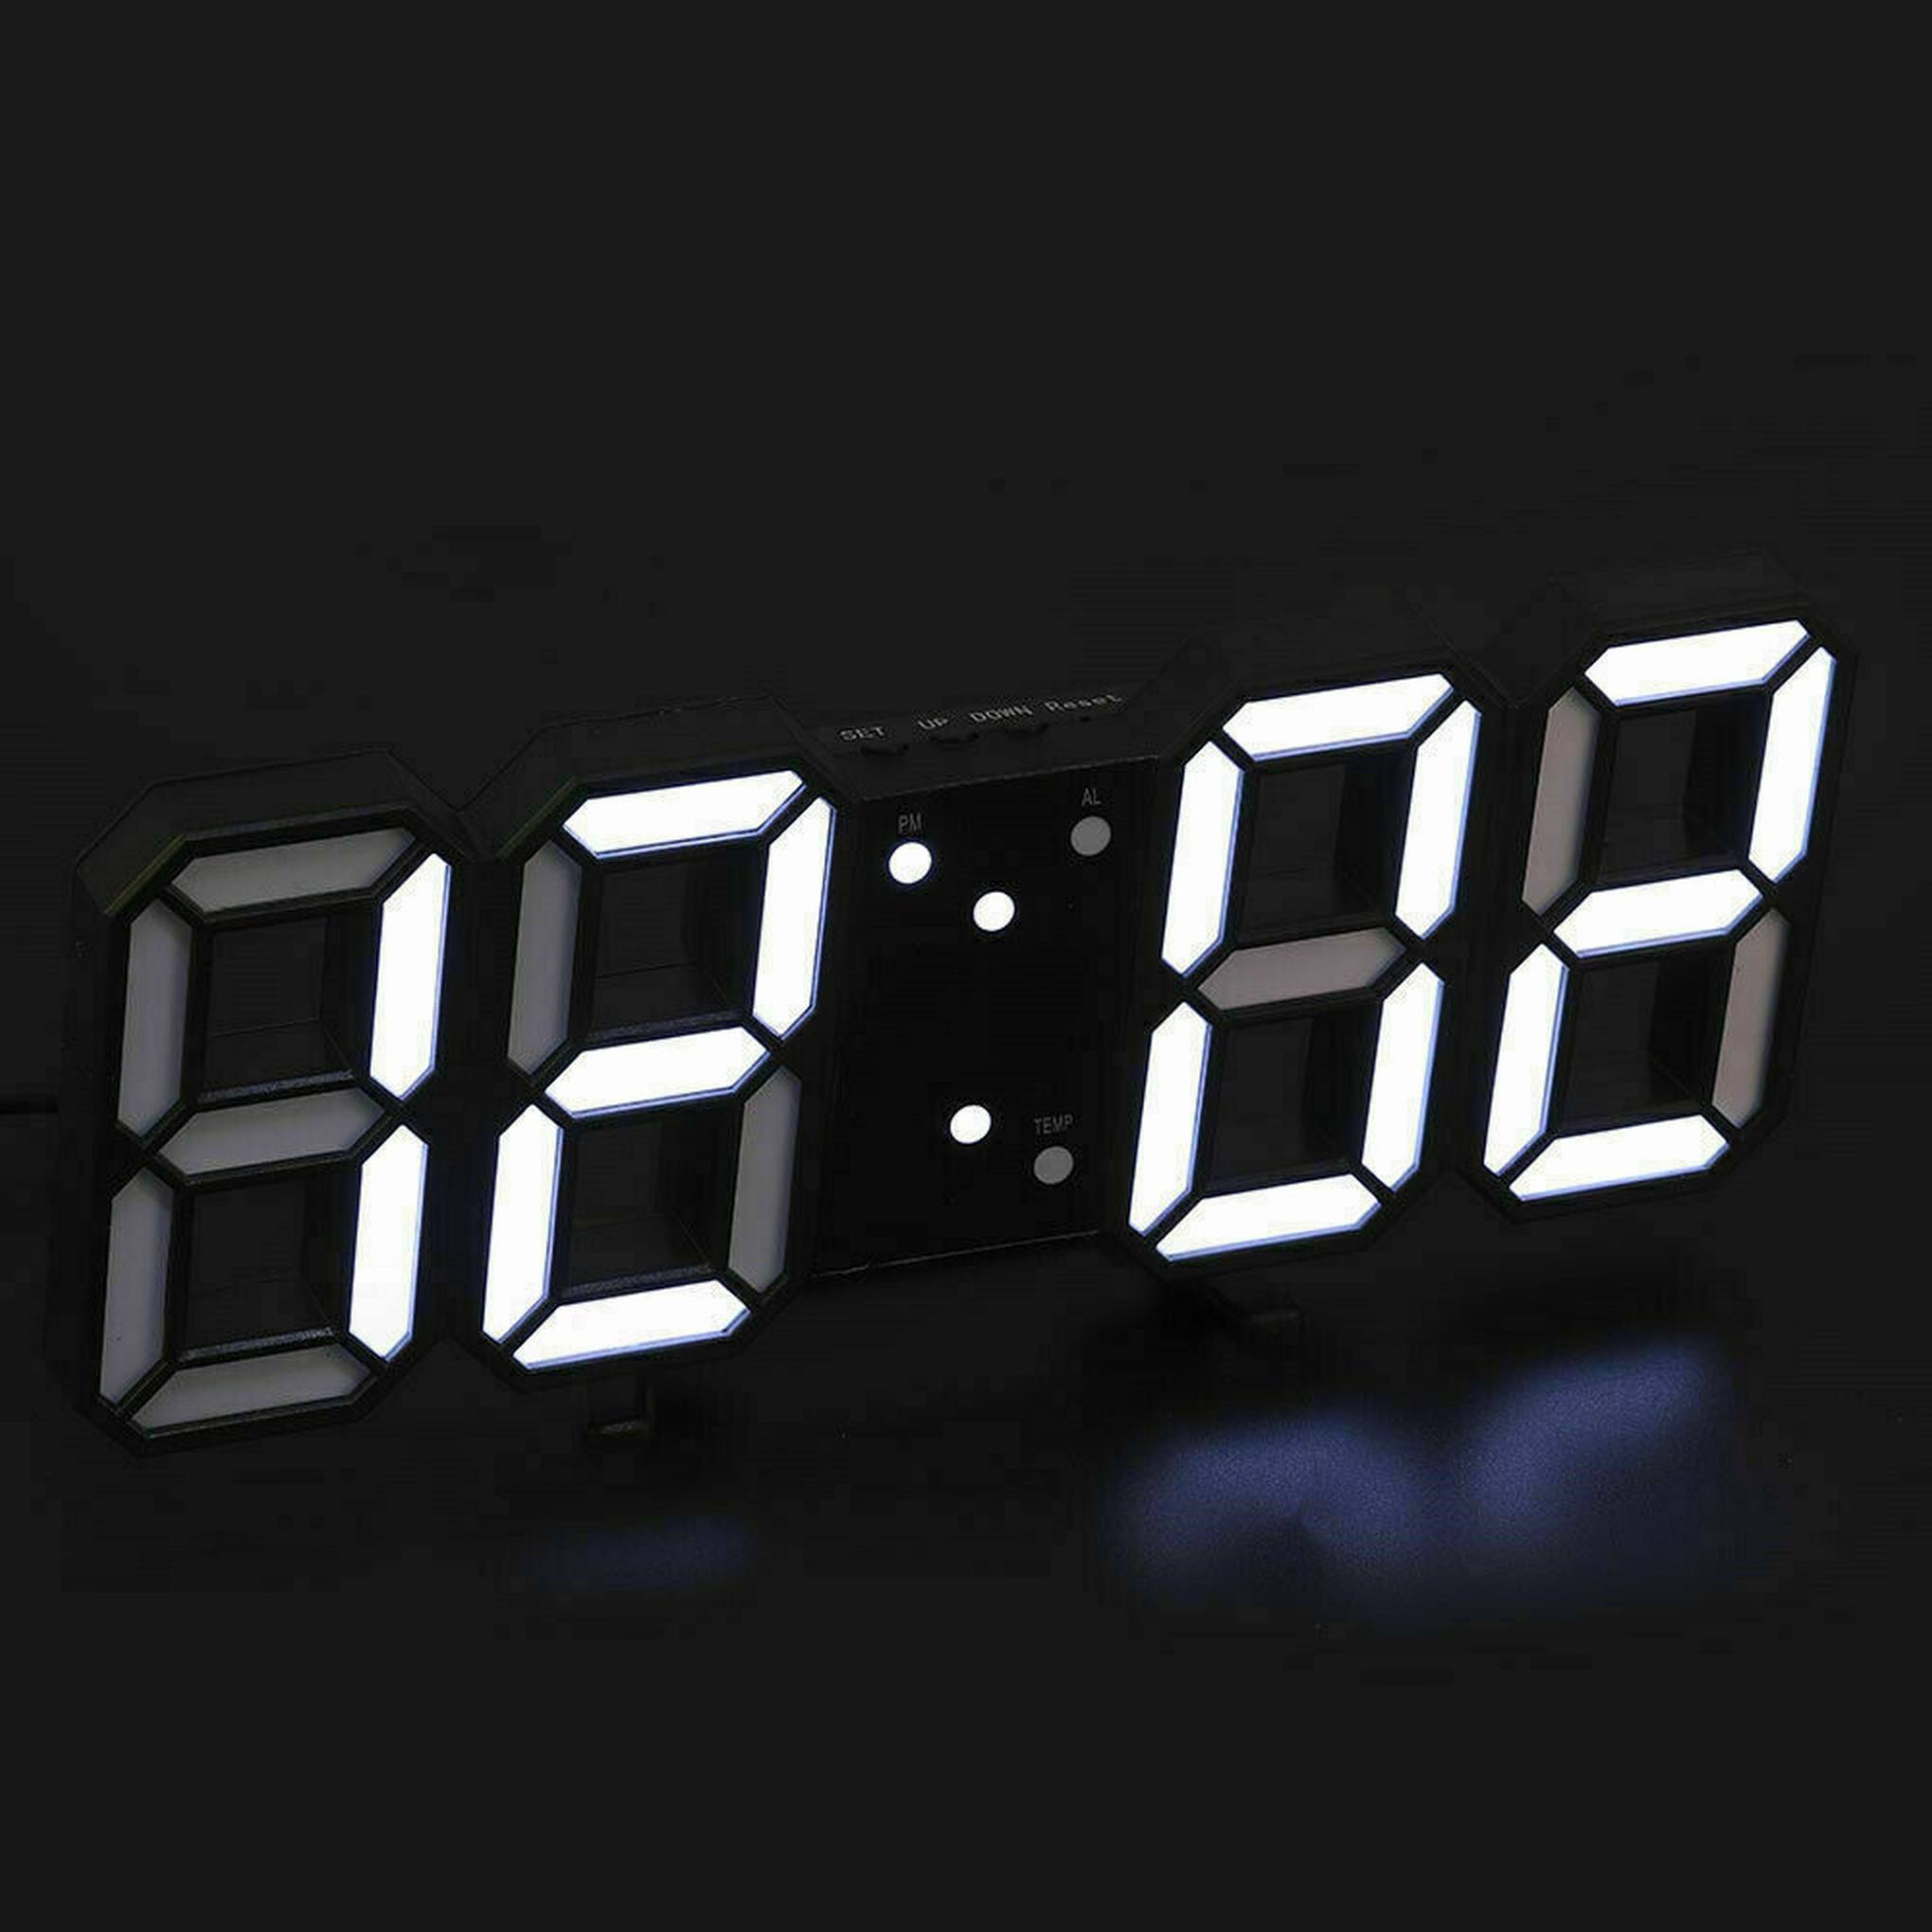 Reloj Despertador Digital de Pared o Mesa – Frikimanes